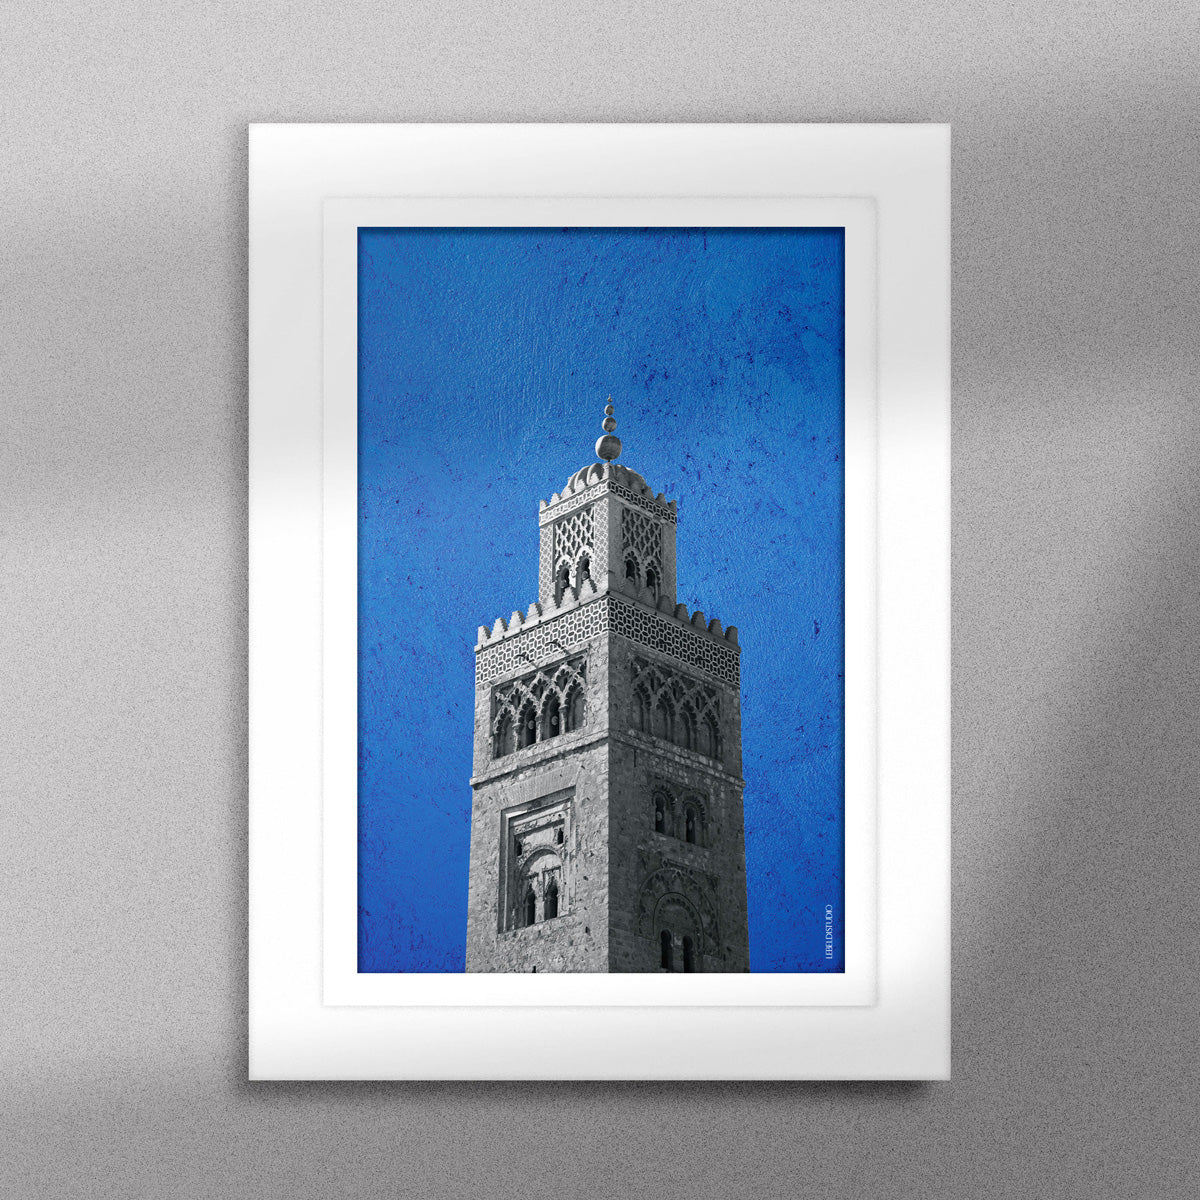 Tableau décoratif représentant la Koutoubia de Marrakech sur un fond bleu, encadré dans un cadre blanc - Format A5.